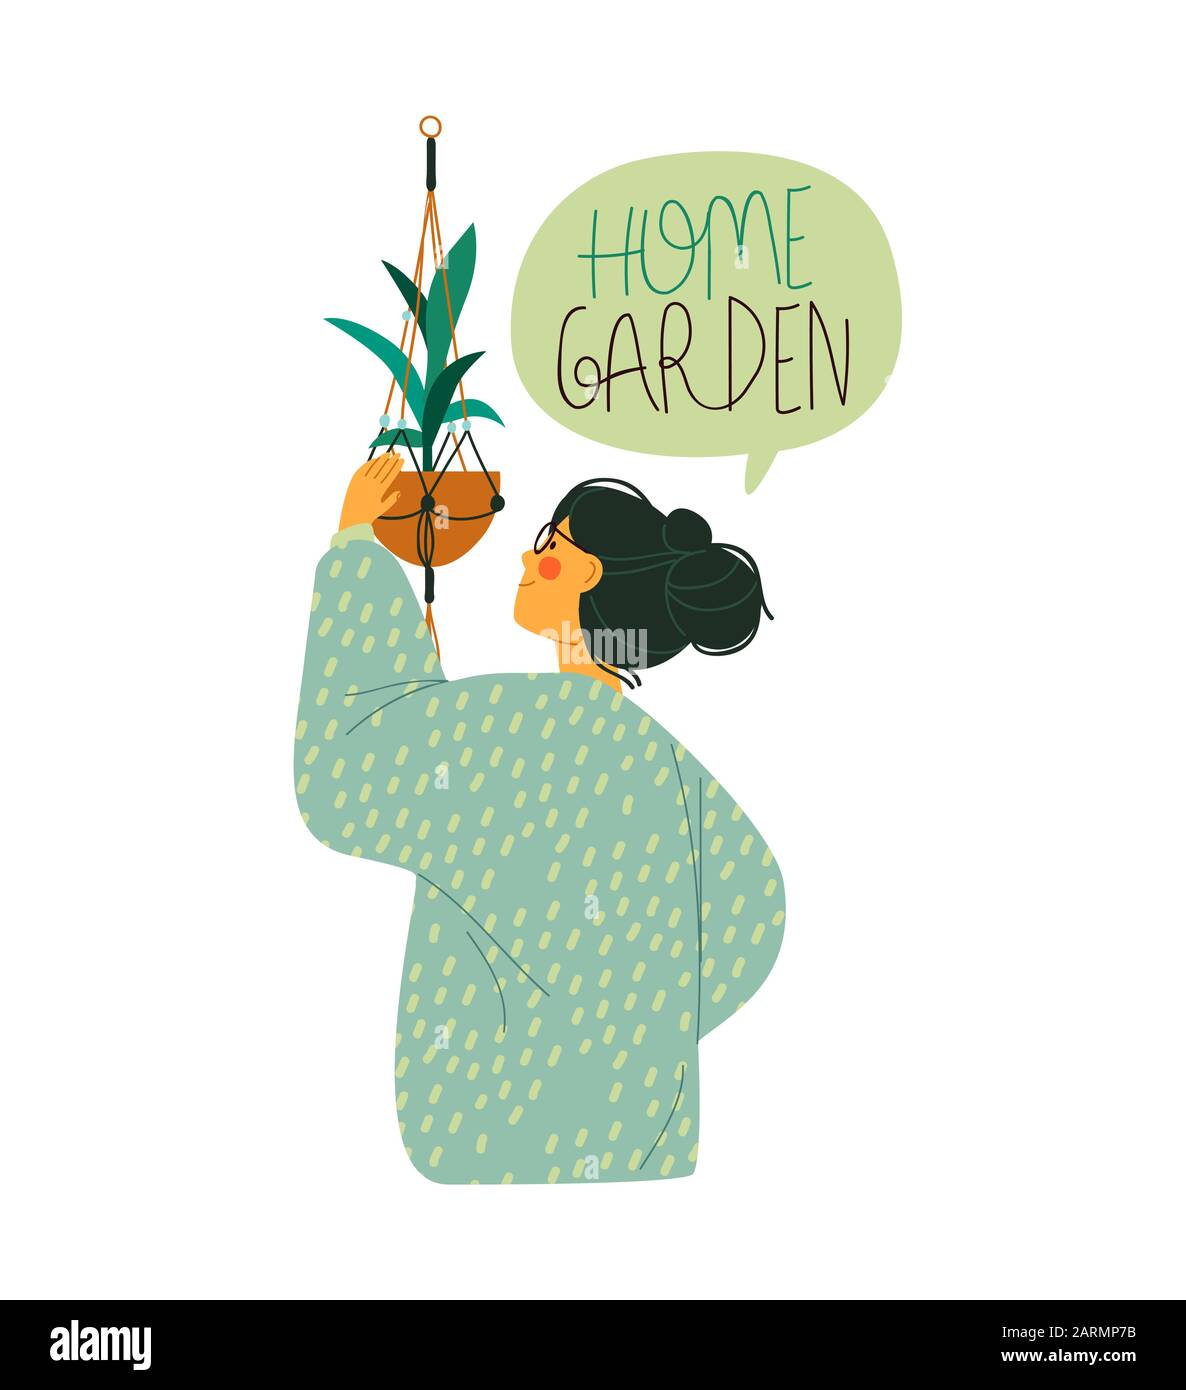 Junge Frau kümmert sich um Hausgartenanlage auf isoliertem weißem Hintergrund. Moderne flache Cartoon-Illustration für Innenraum-Gartenbaukonzept. Stock Vektor